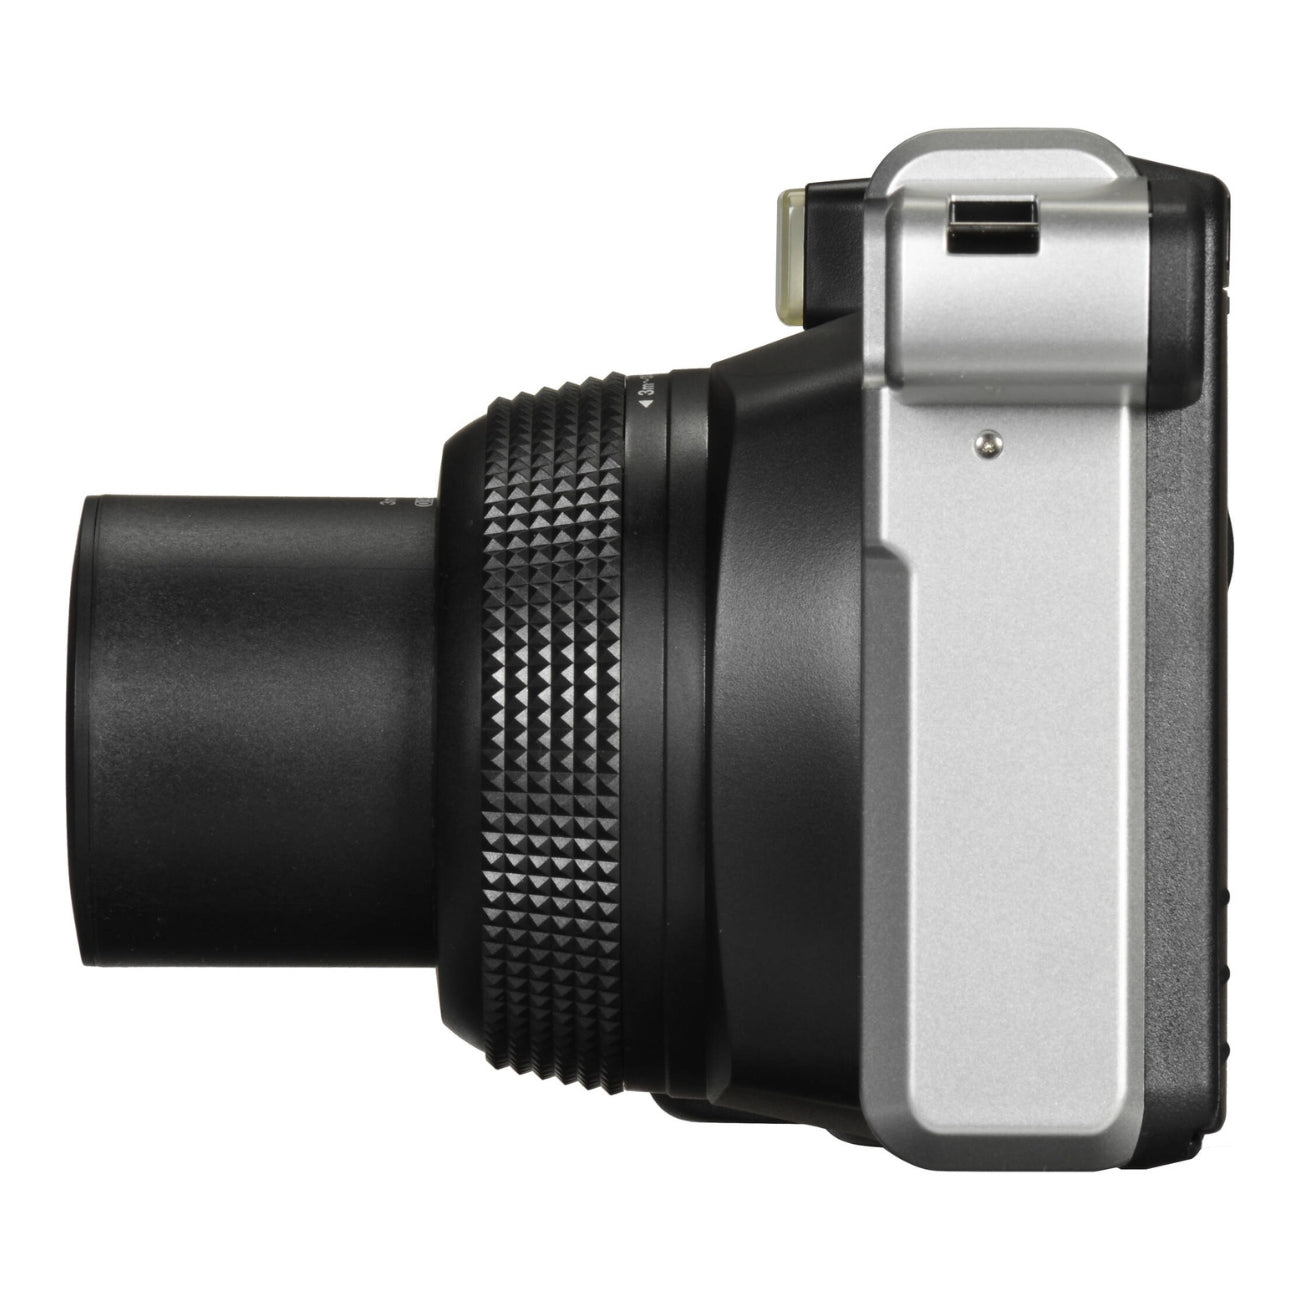 Cámara Fujifilm Instax Wide 300 + close up lens